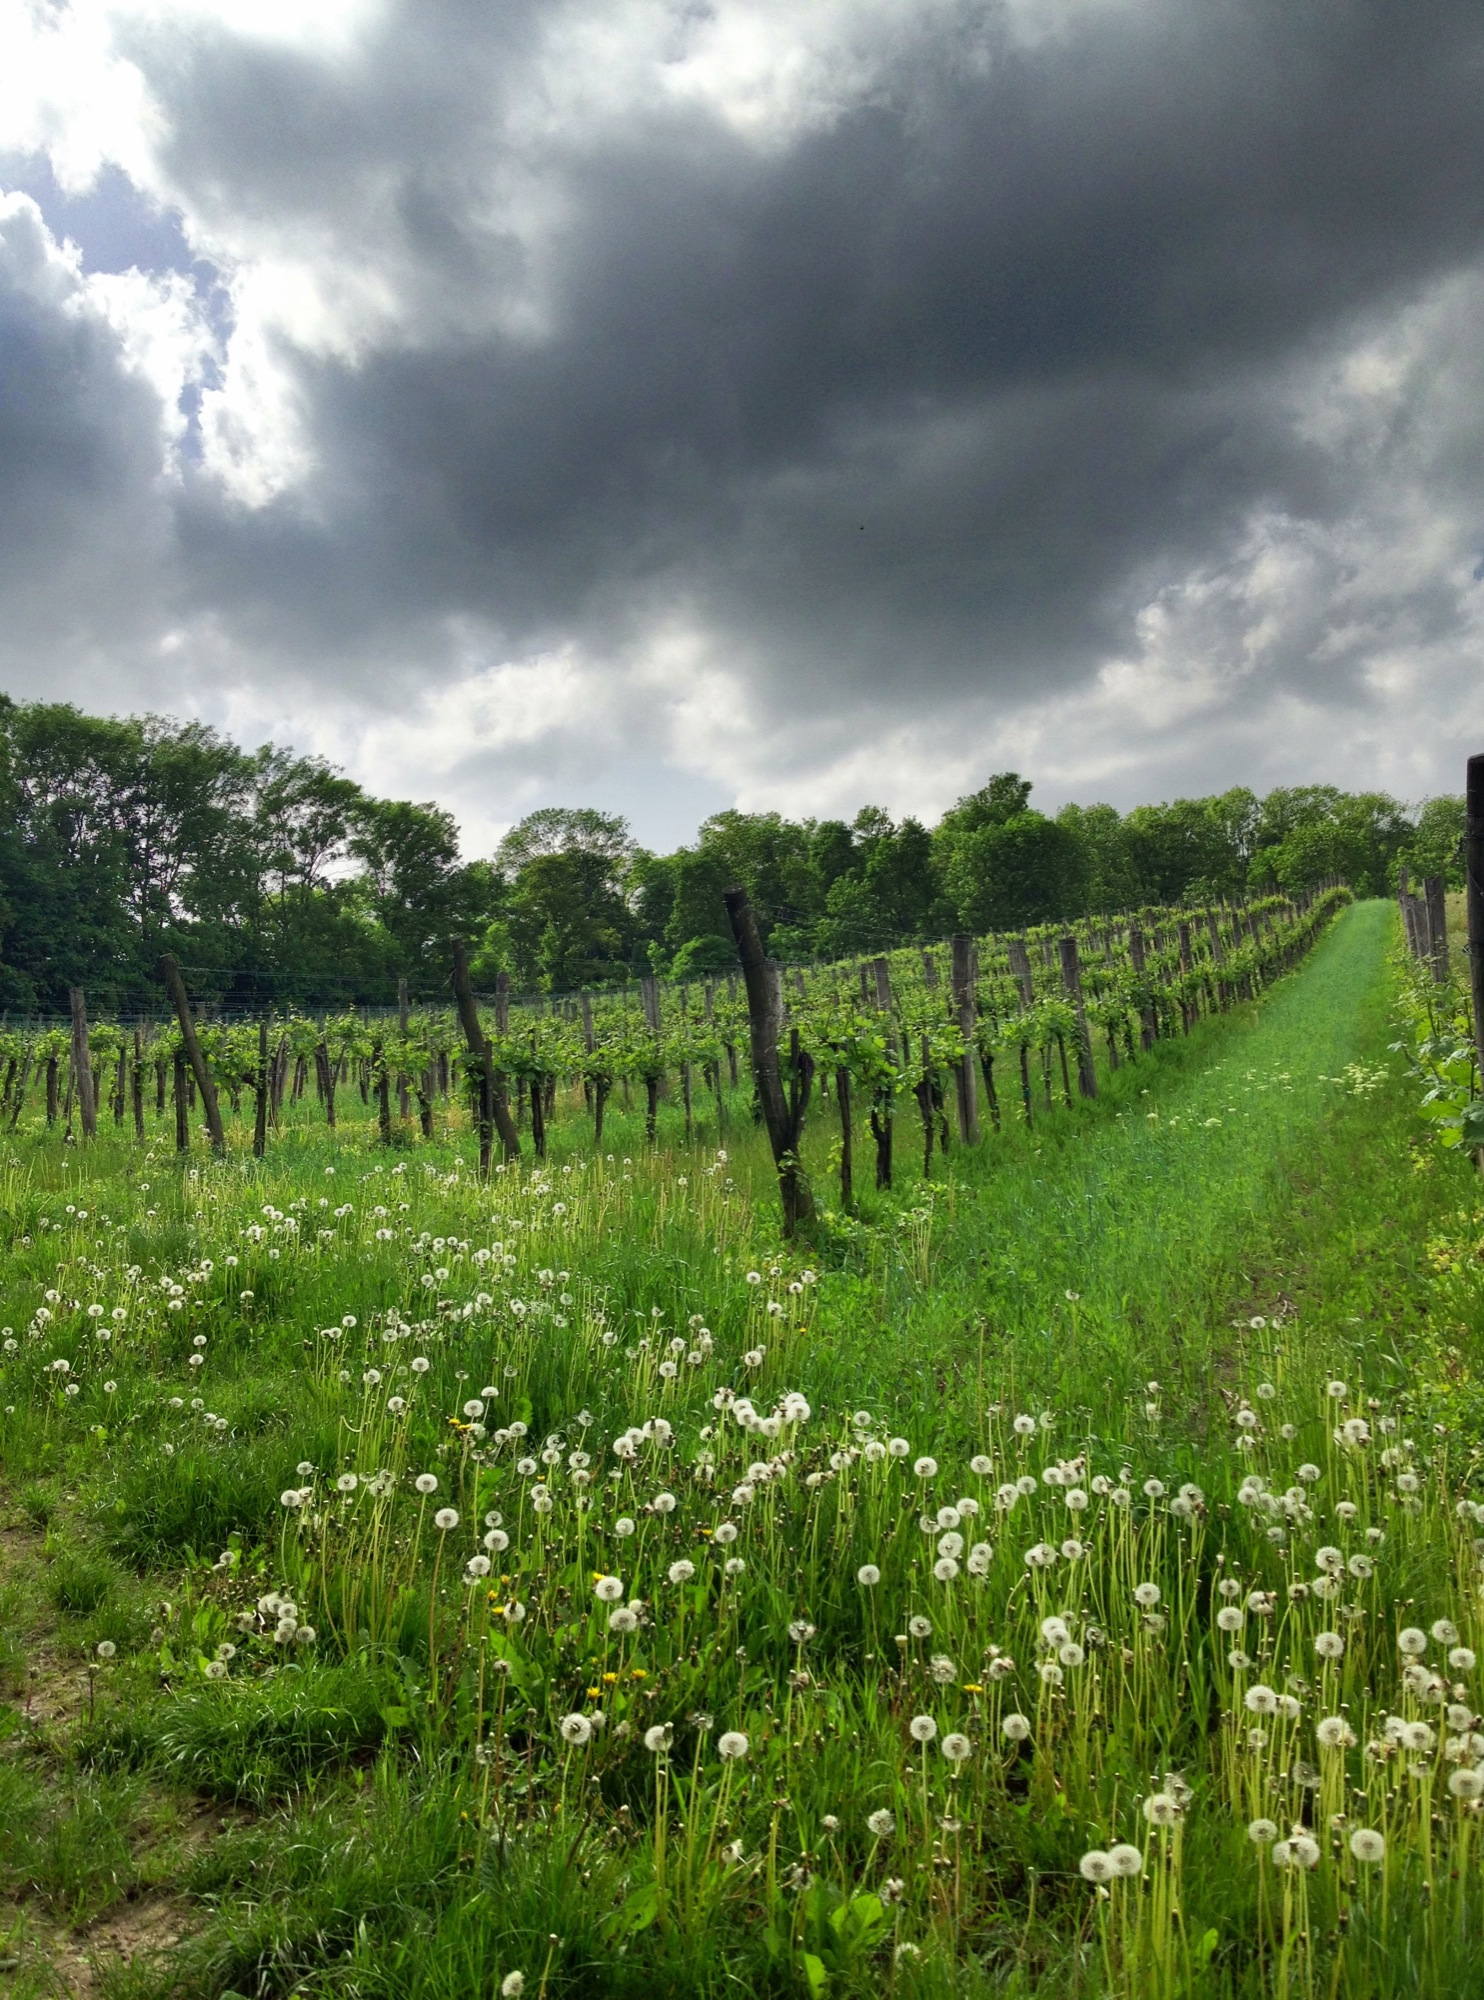 Bedrohliche Wolken ziehen über den Weingärten heran